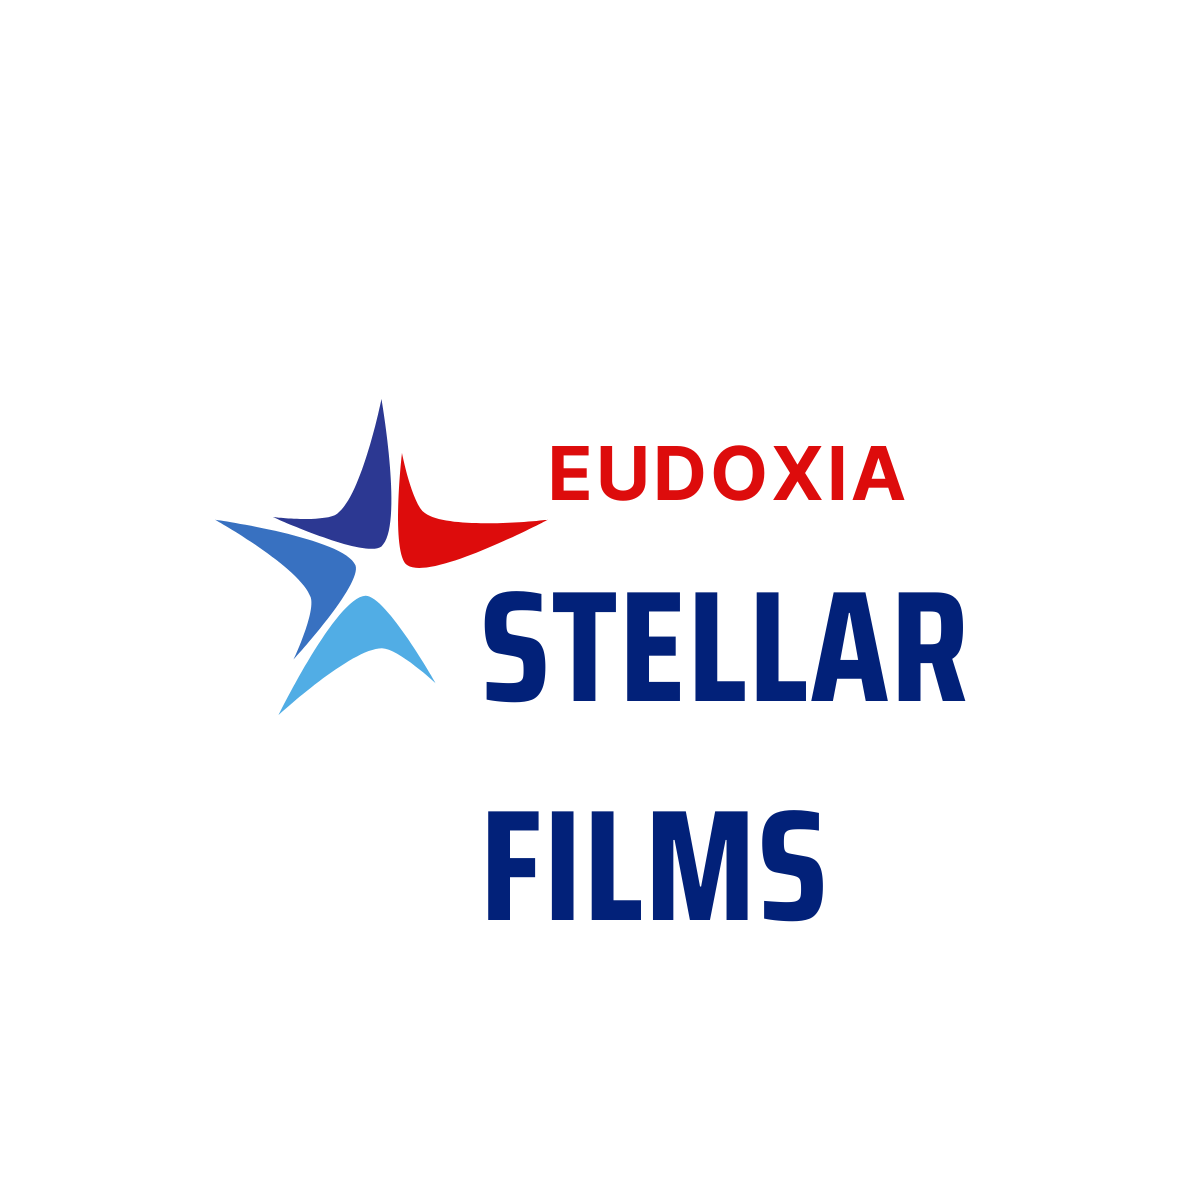 Eudoxia Stellar Films